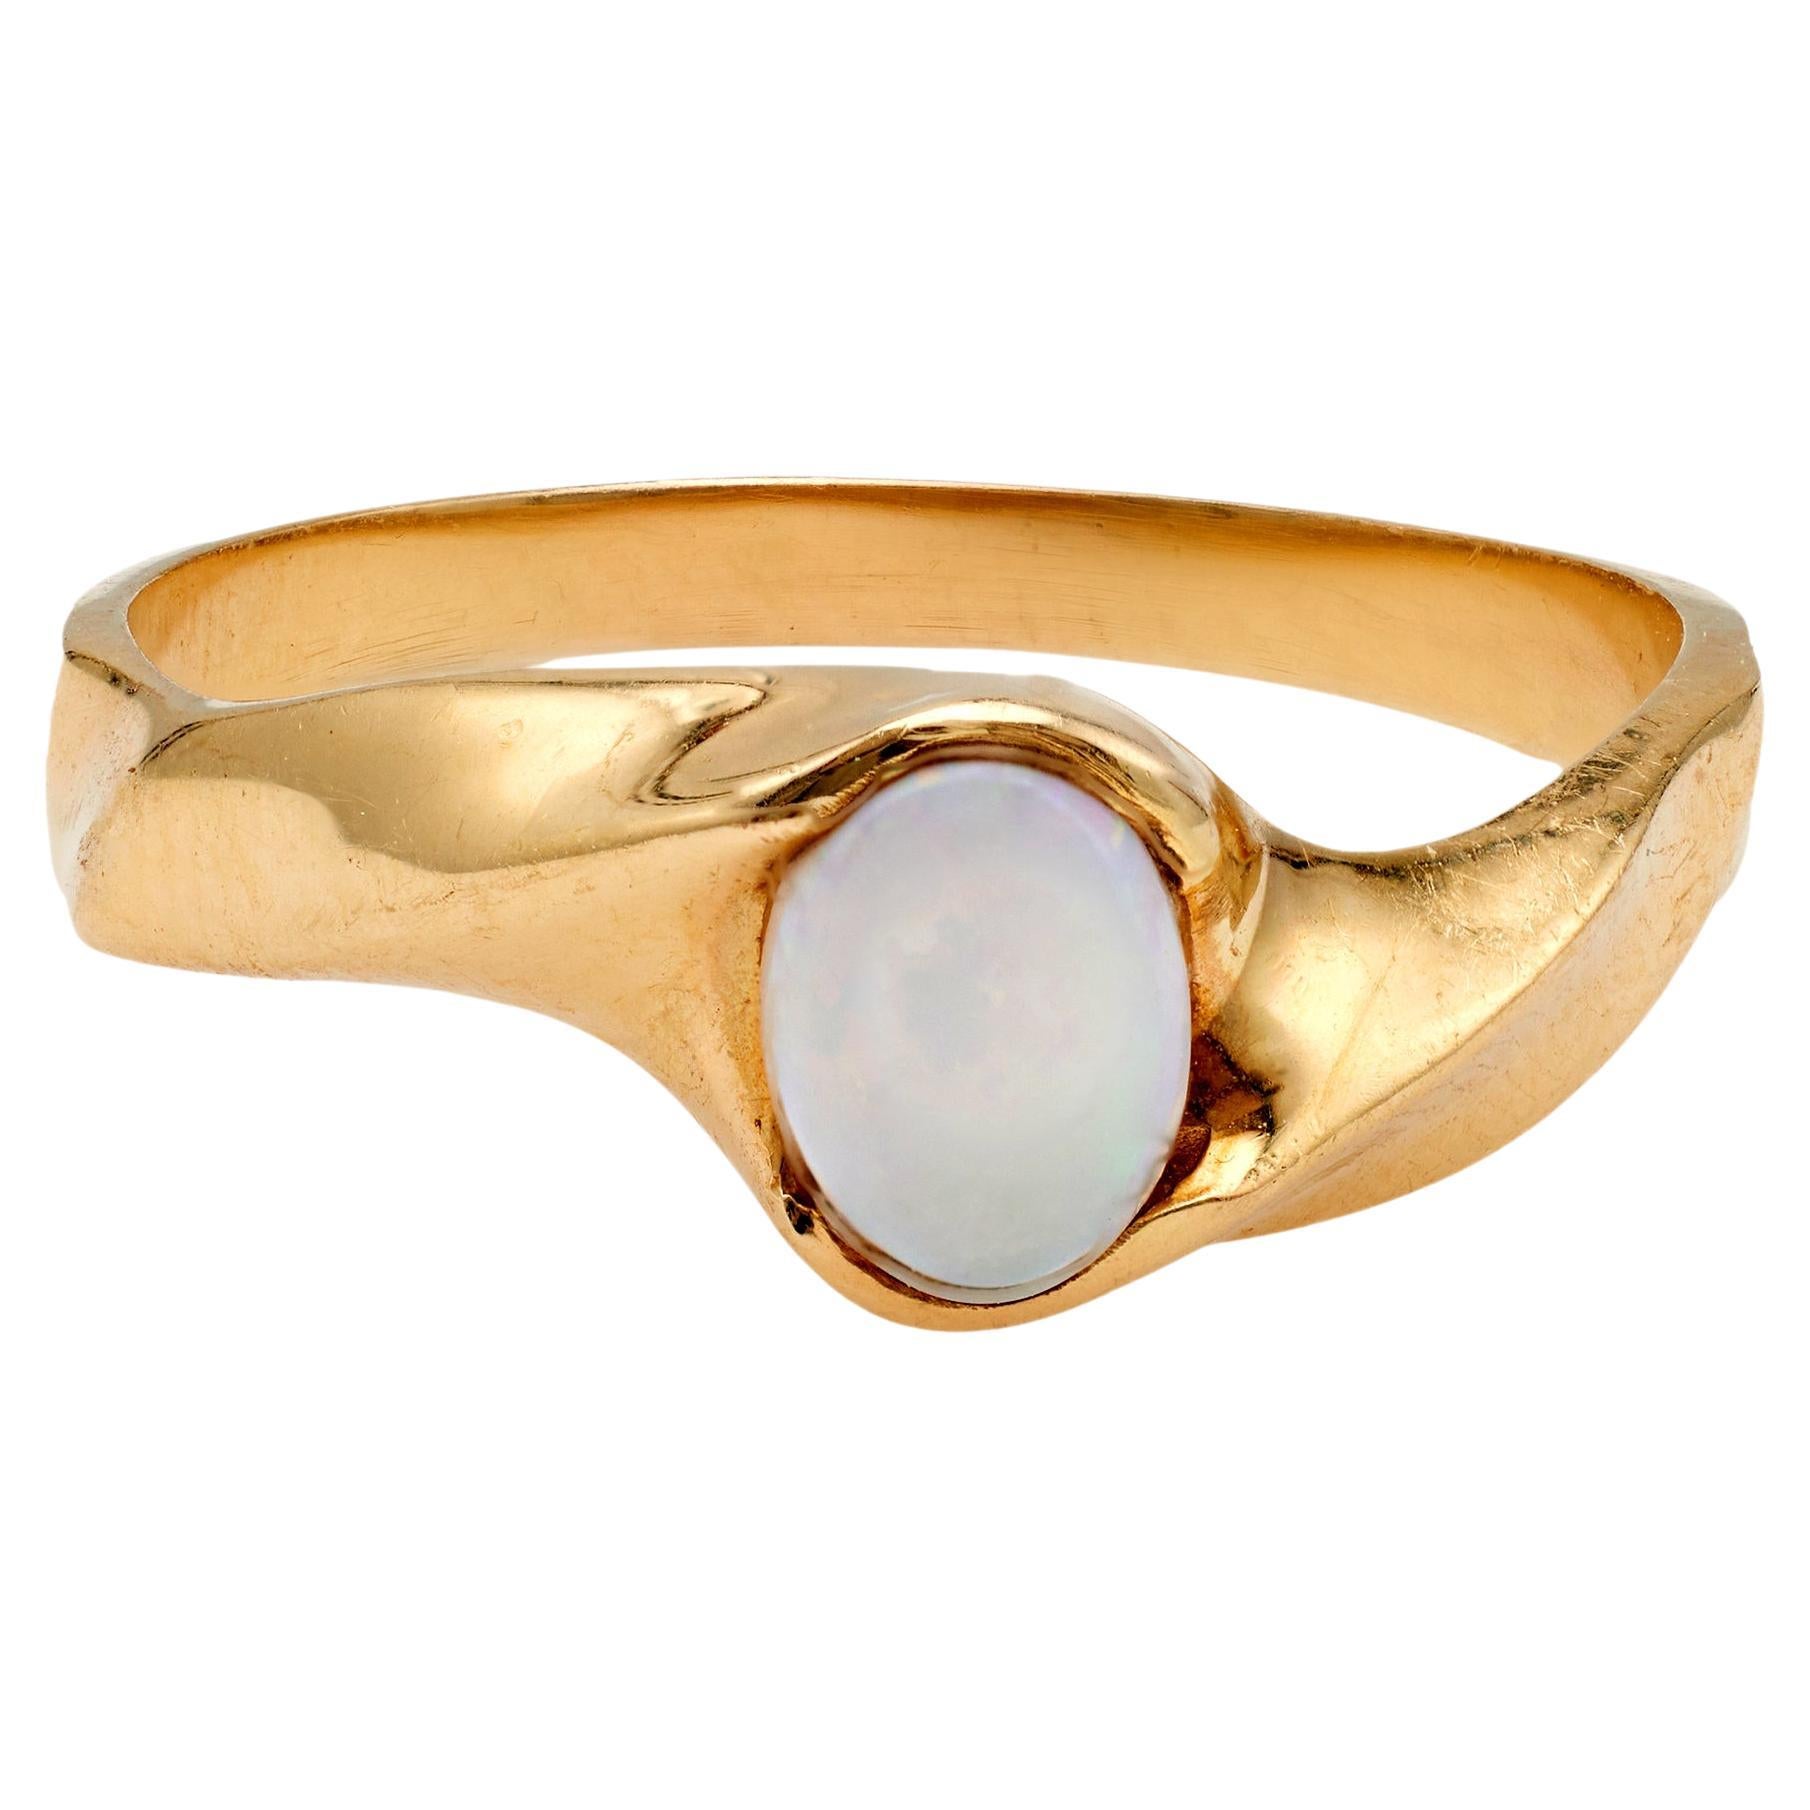 Vintage Opal 14k Gelbgold Ring, Vintage